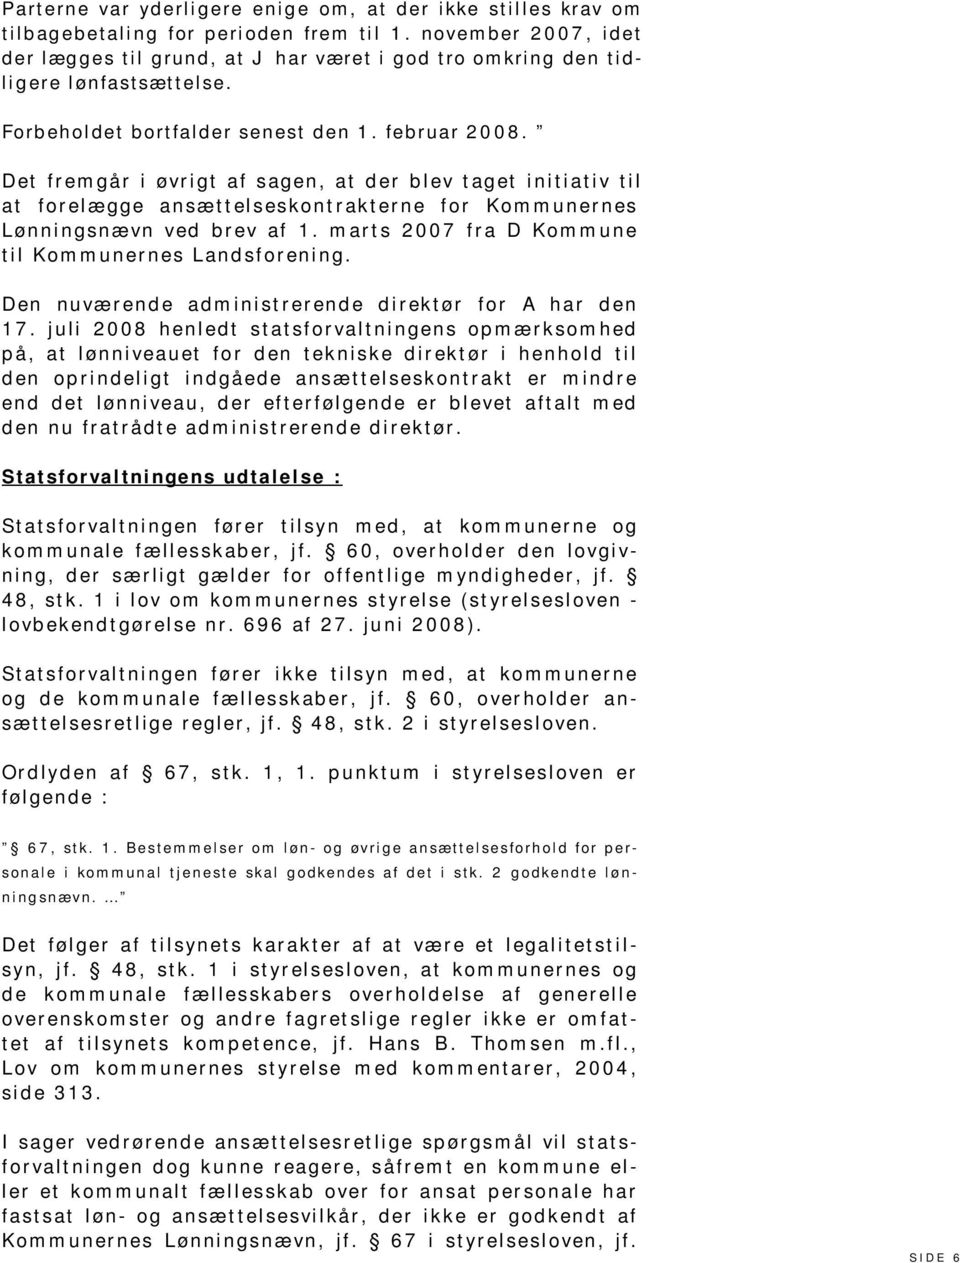 Det fremgår i øvrigt af sagen, at der blev taget initiativ til at forelægge ansættelseskontrakterne for Kommunernes Lønningsnævn ved brev af 1. marts 2007 fra D Kommune til Kommunernes Landsforening.